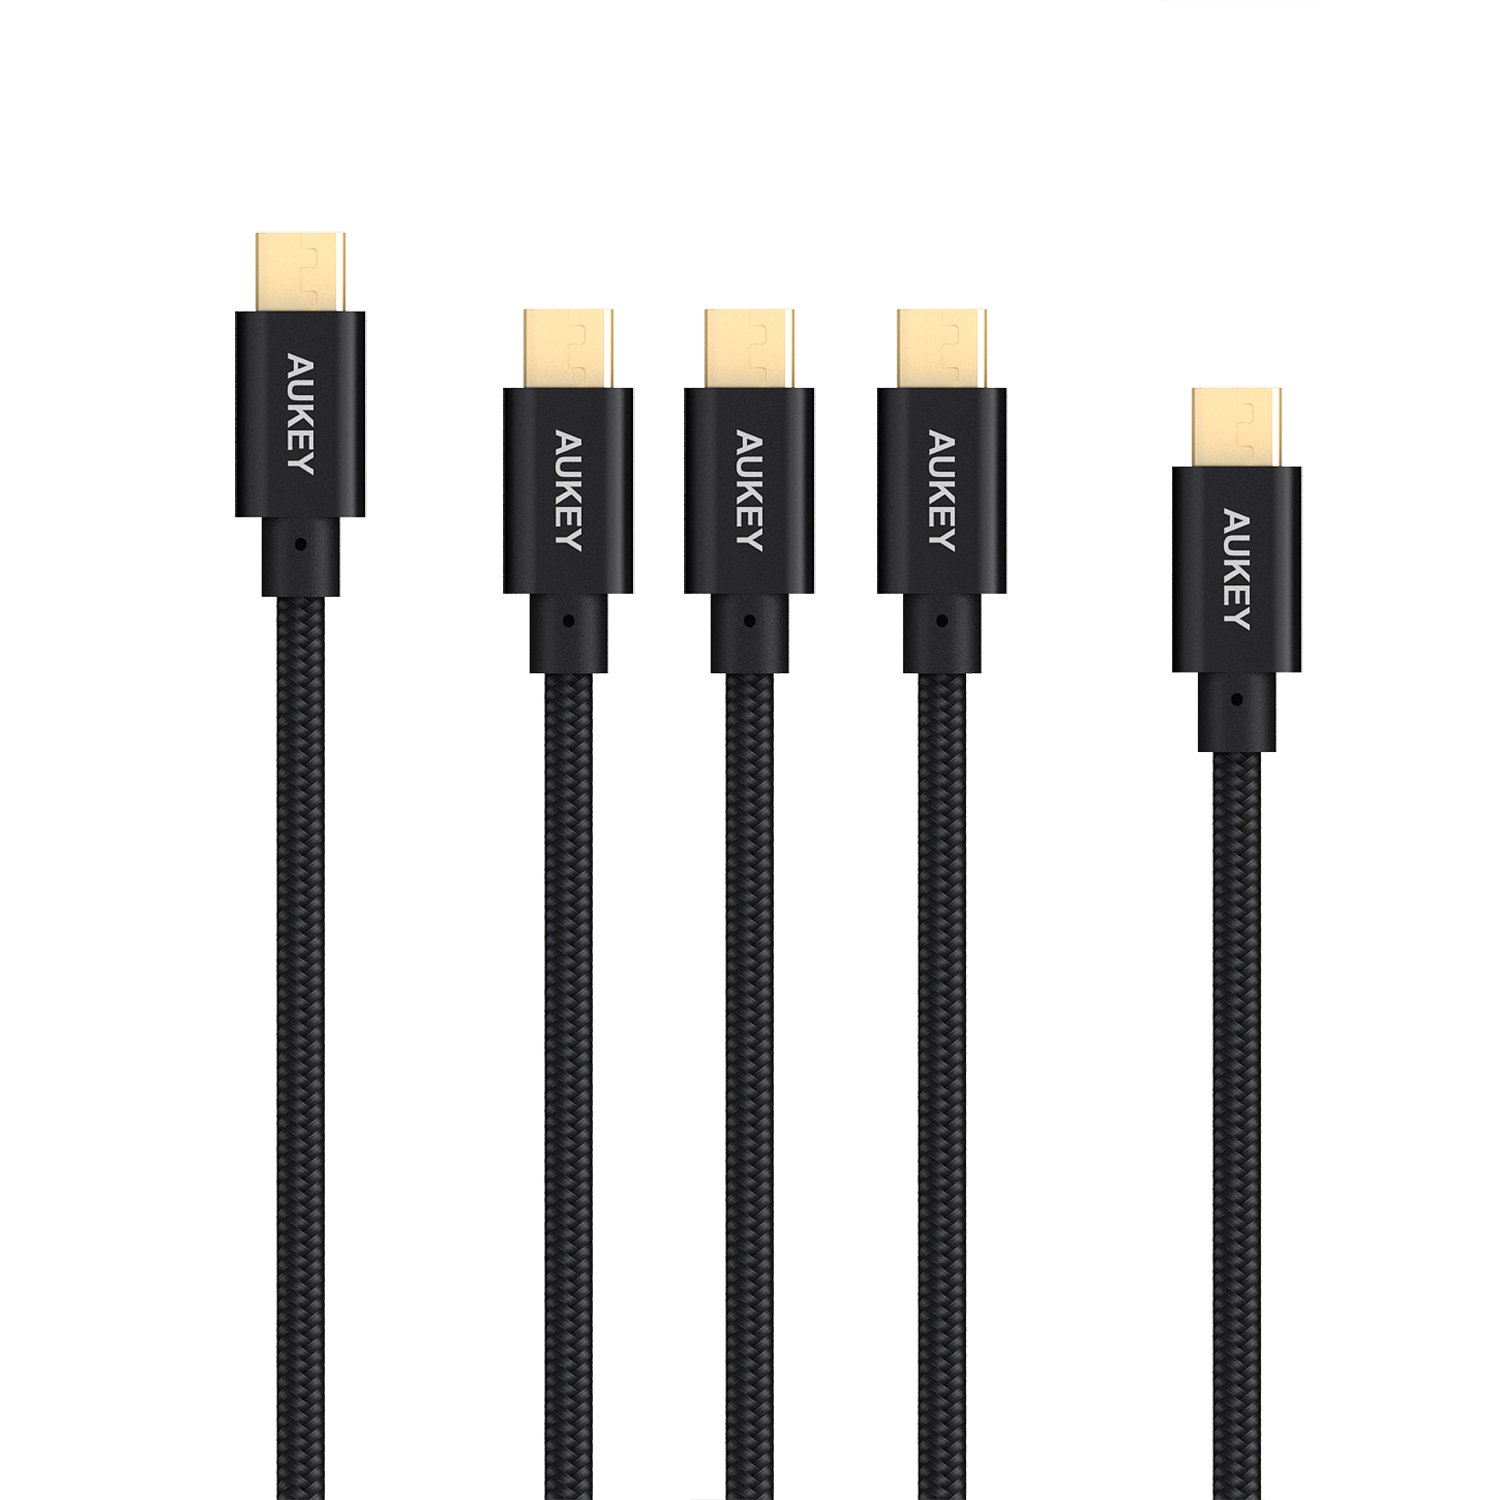 5 cables trenzados micro USB solo 4,1€